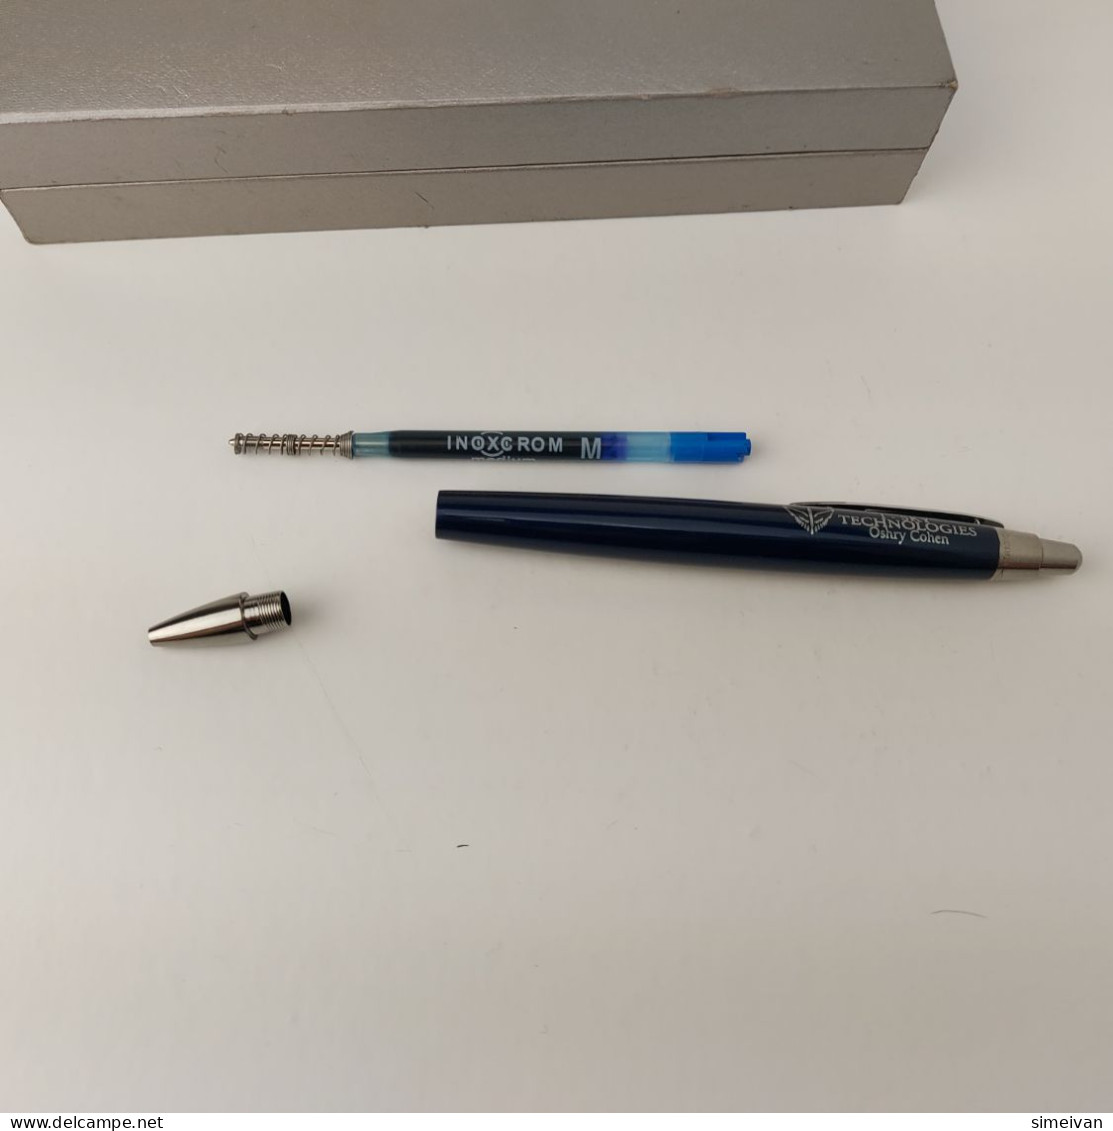 INOXCROM Zeppelin Dark Blue Lacquer Chrome Trim Ballpoin Pen Made in Spain #5434